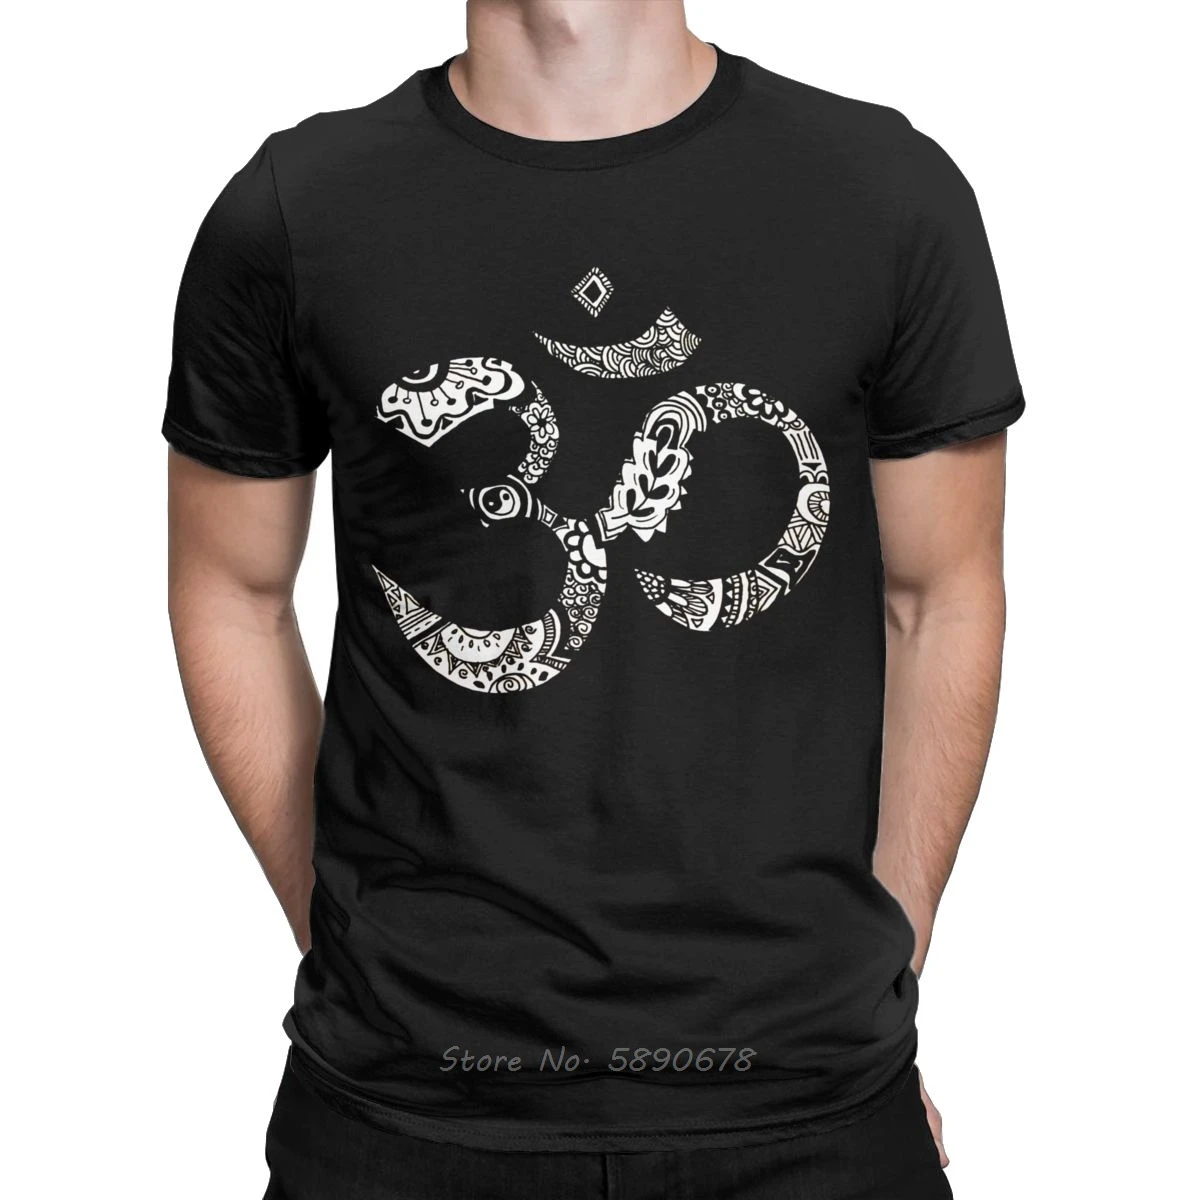 

Удивительные футболки с надписью Om для мужчин, футболки из чистого хлопка, буддизм, Будда, религиозная религия, футболки с коротким рукавом, ...